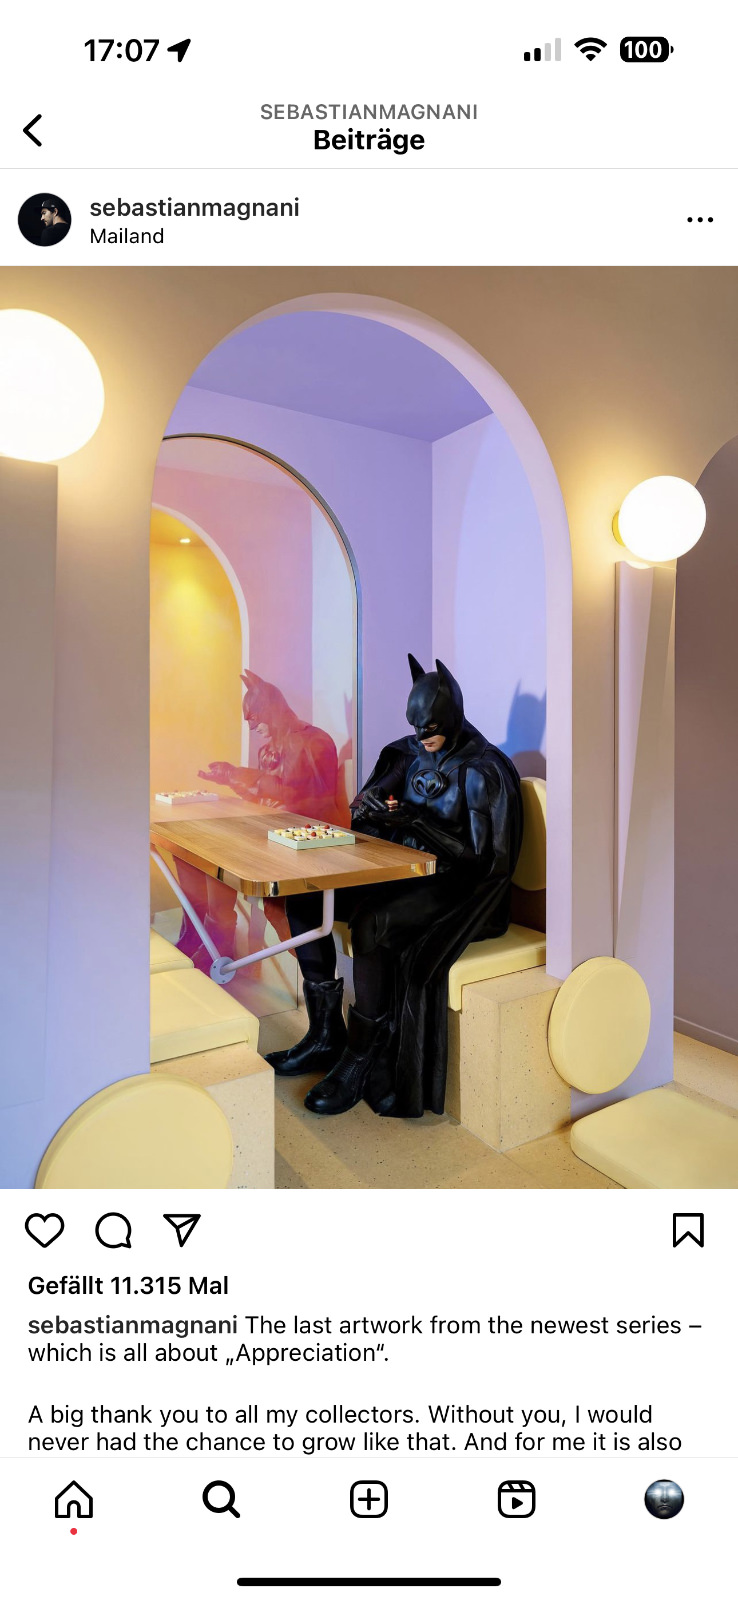 Auf Instagram-Kanal von Sebastian Magnani finden Sie mehr Bilder aus seiner Batman-Serie. @ Sebastian Magnani. Zufälle gibt es …